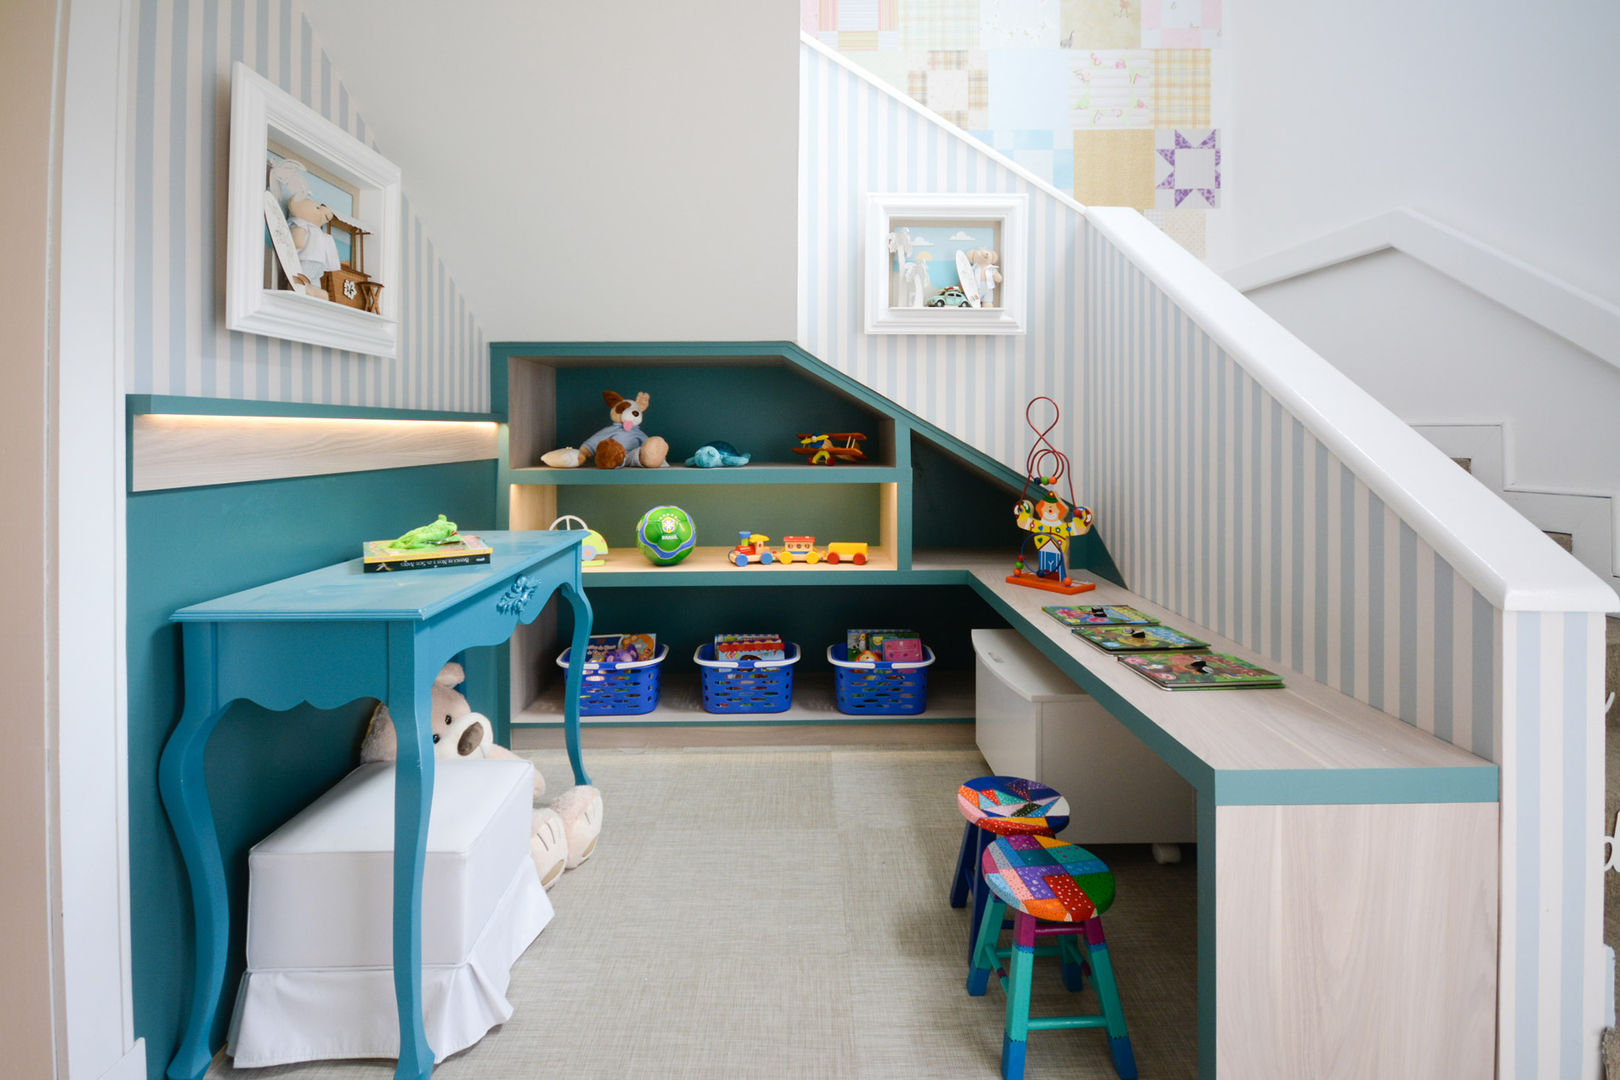 MOSTRA BABY DREAMS - 2014, Bender Arquitetura Bender Arquitetura Chambre d'enfant moderne